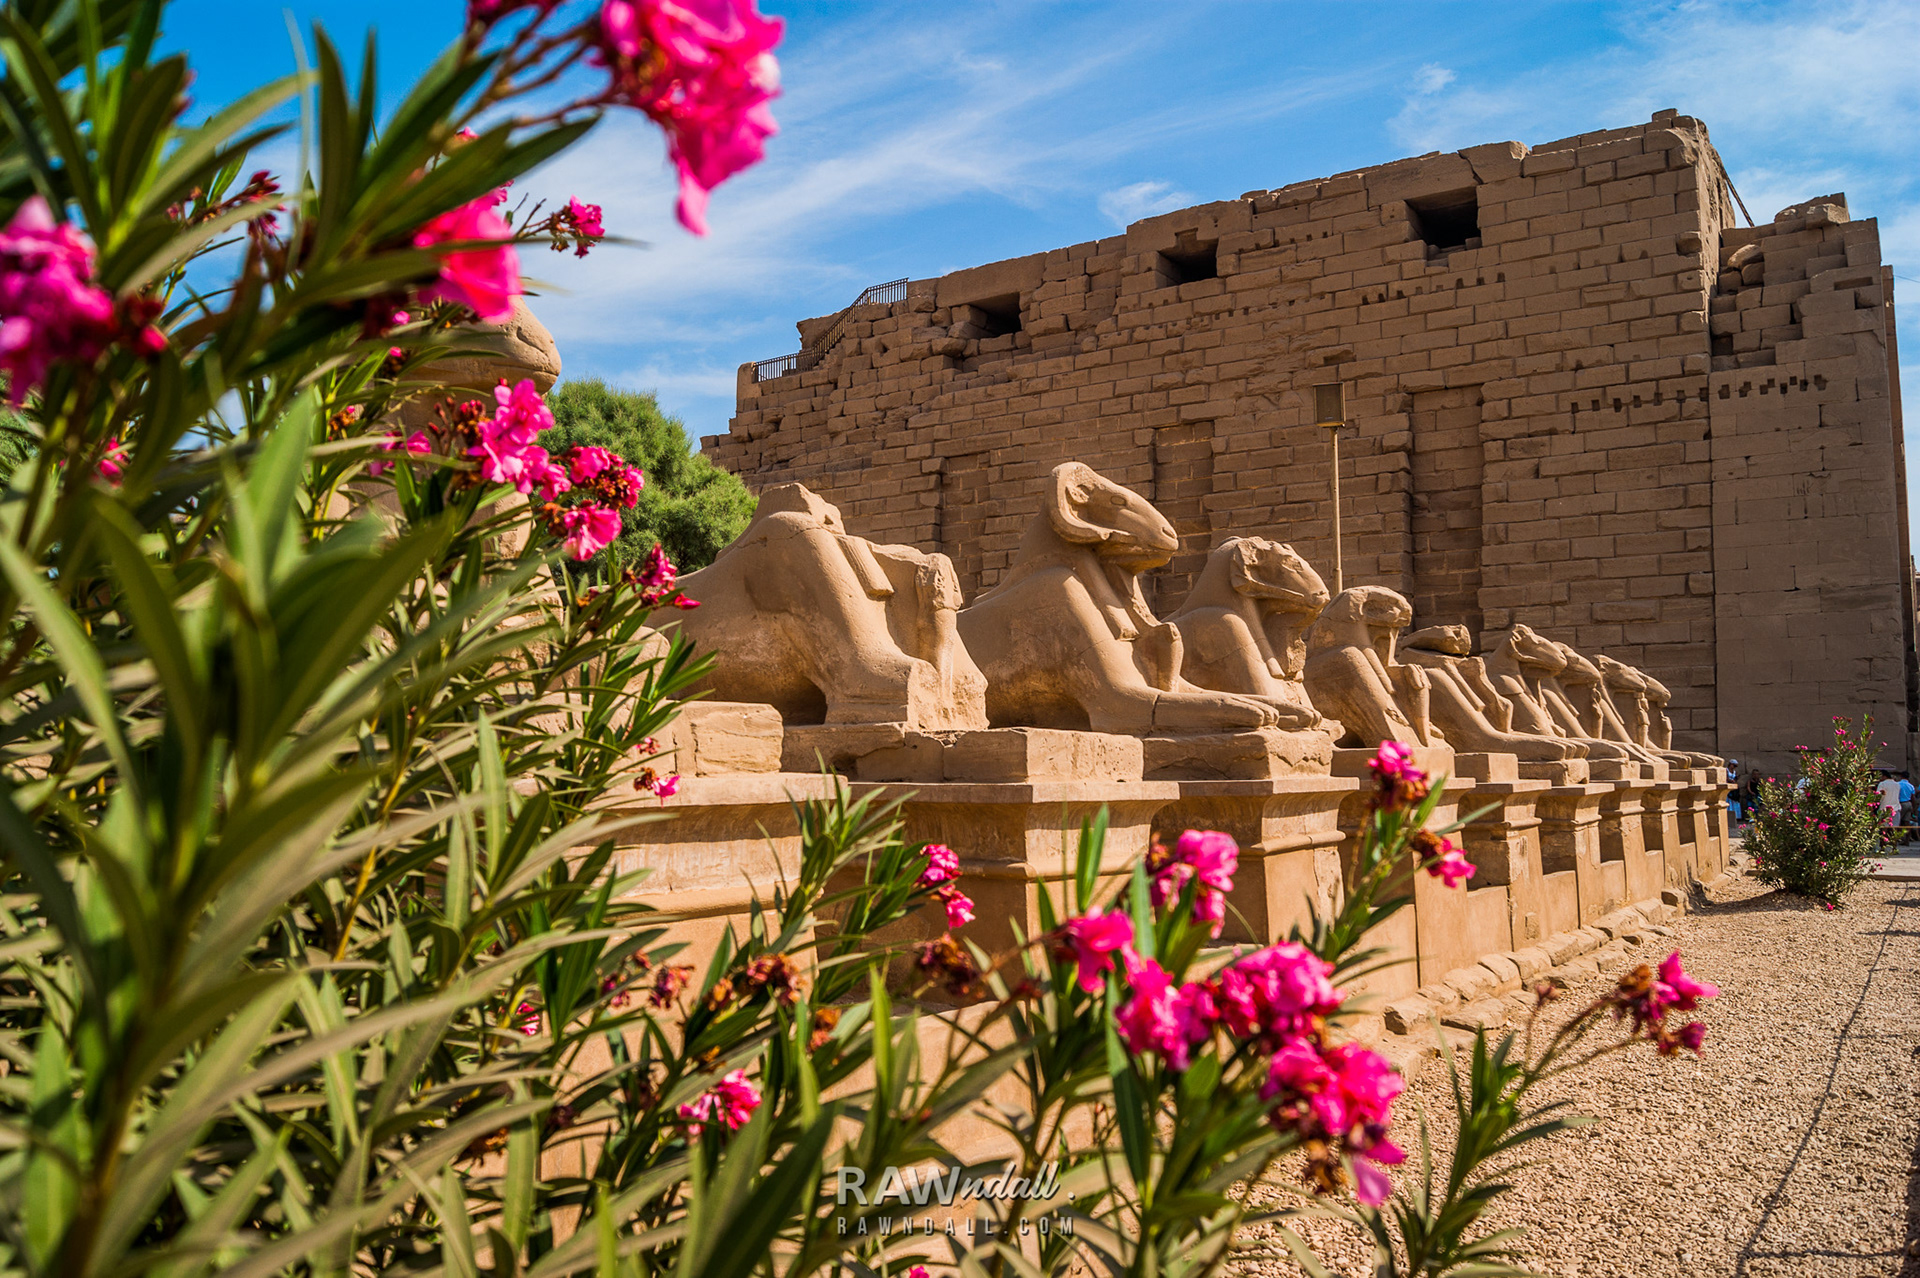 Paisaje desertico del palacio de Luxor en Egipto.